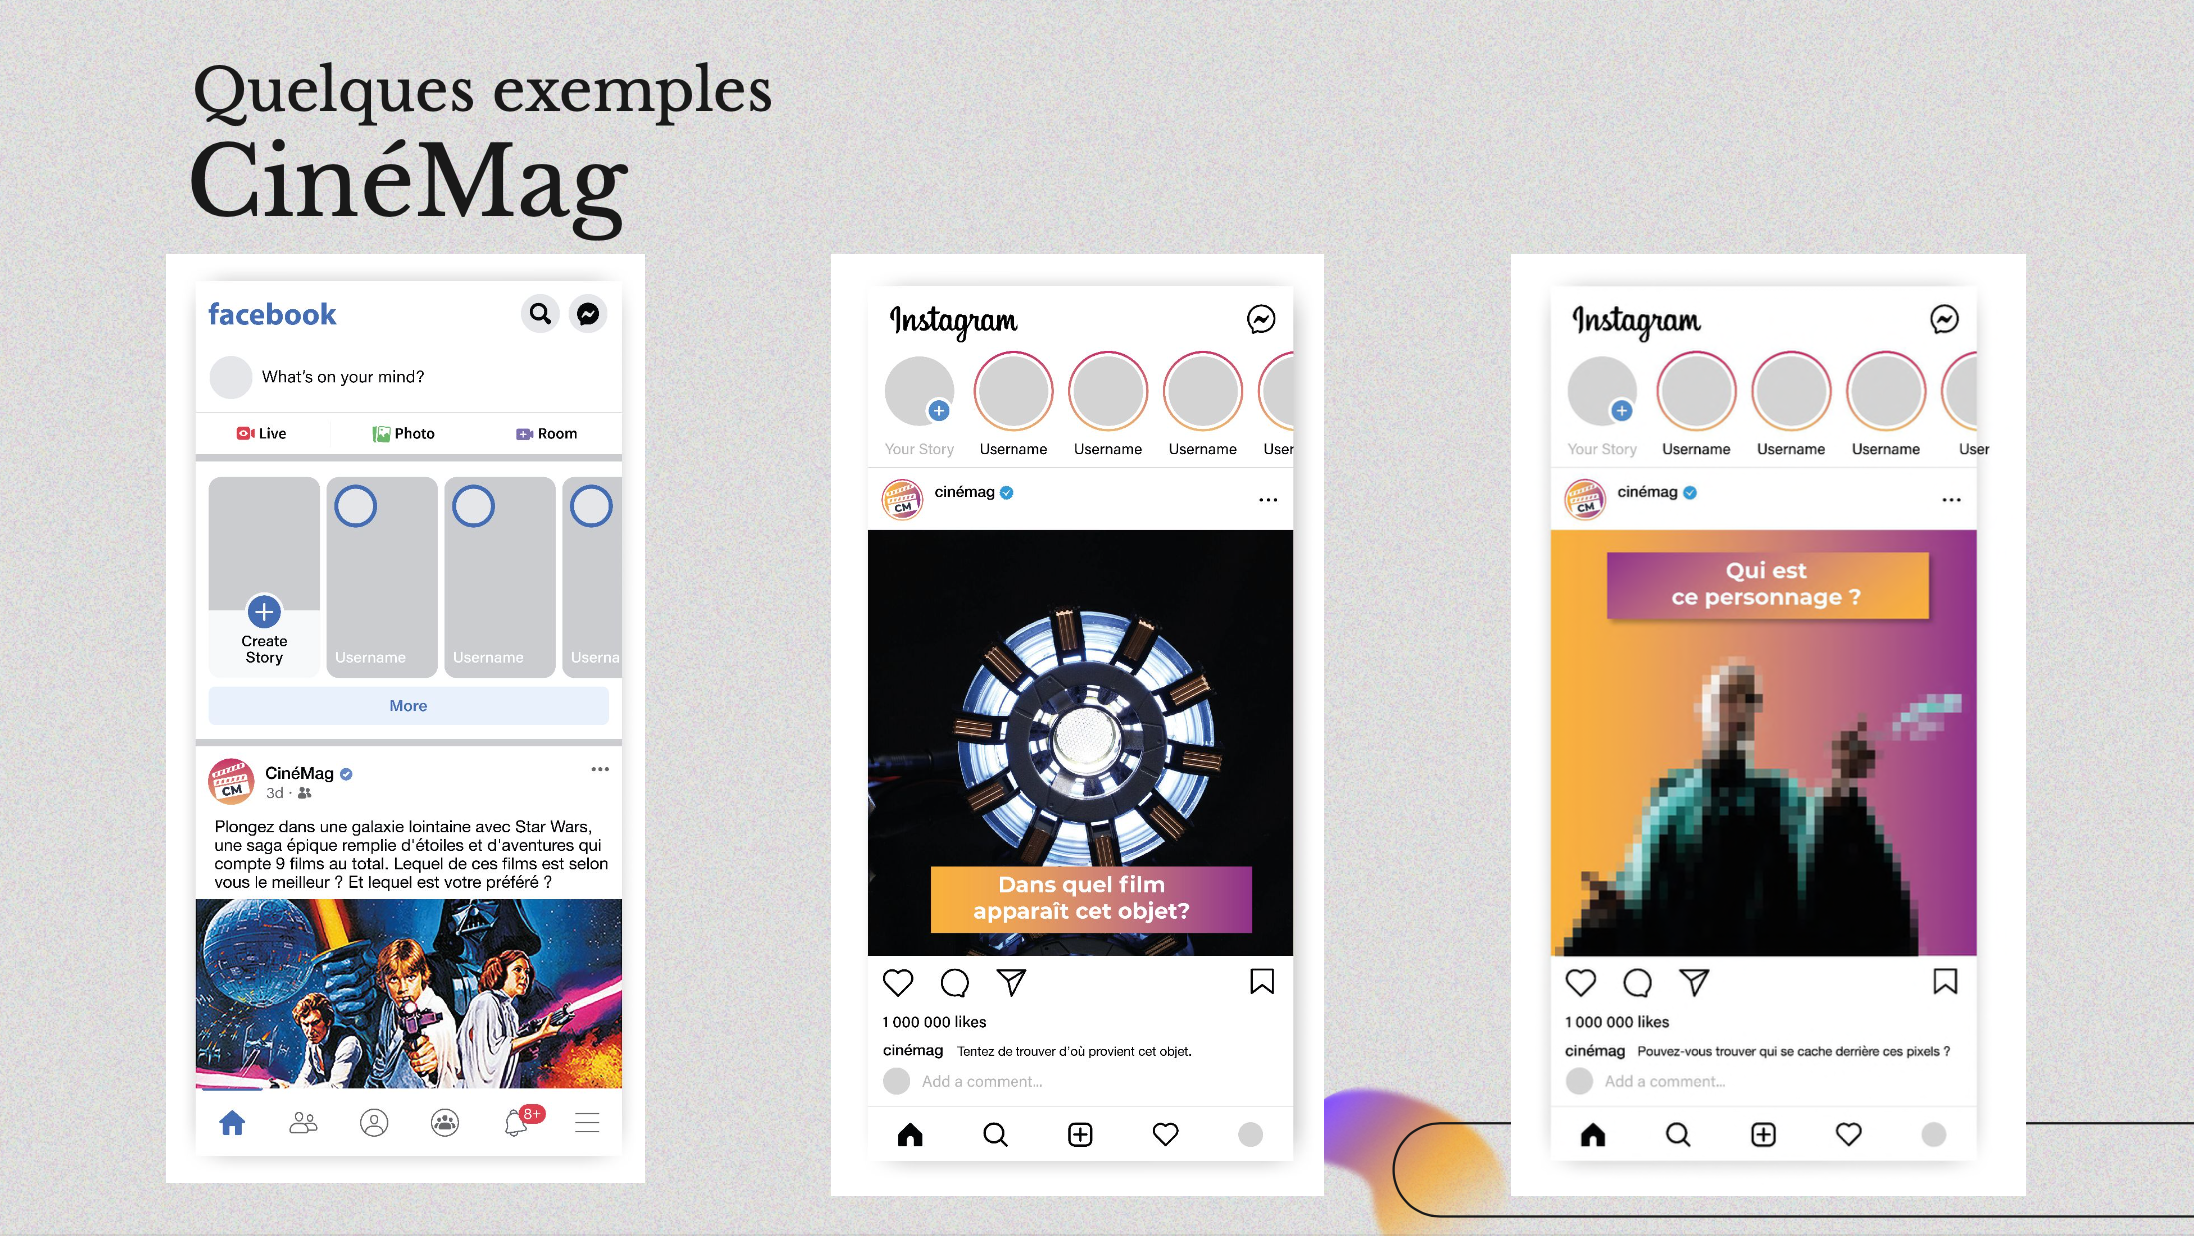 Capture d'écran d'une slide de la présentation donnant trois exemples de publications sur Twitter et Instagram